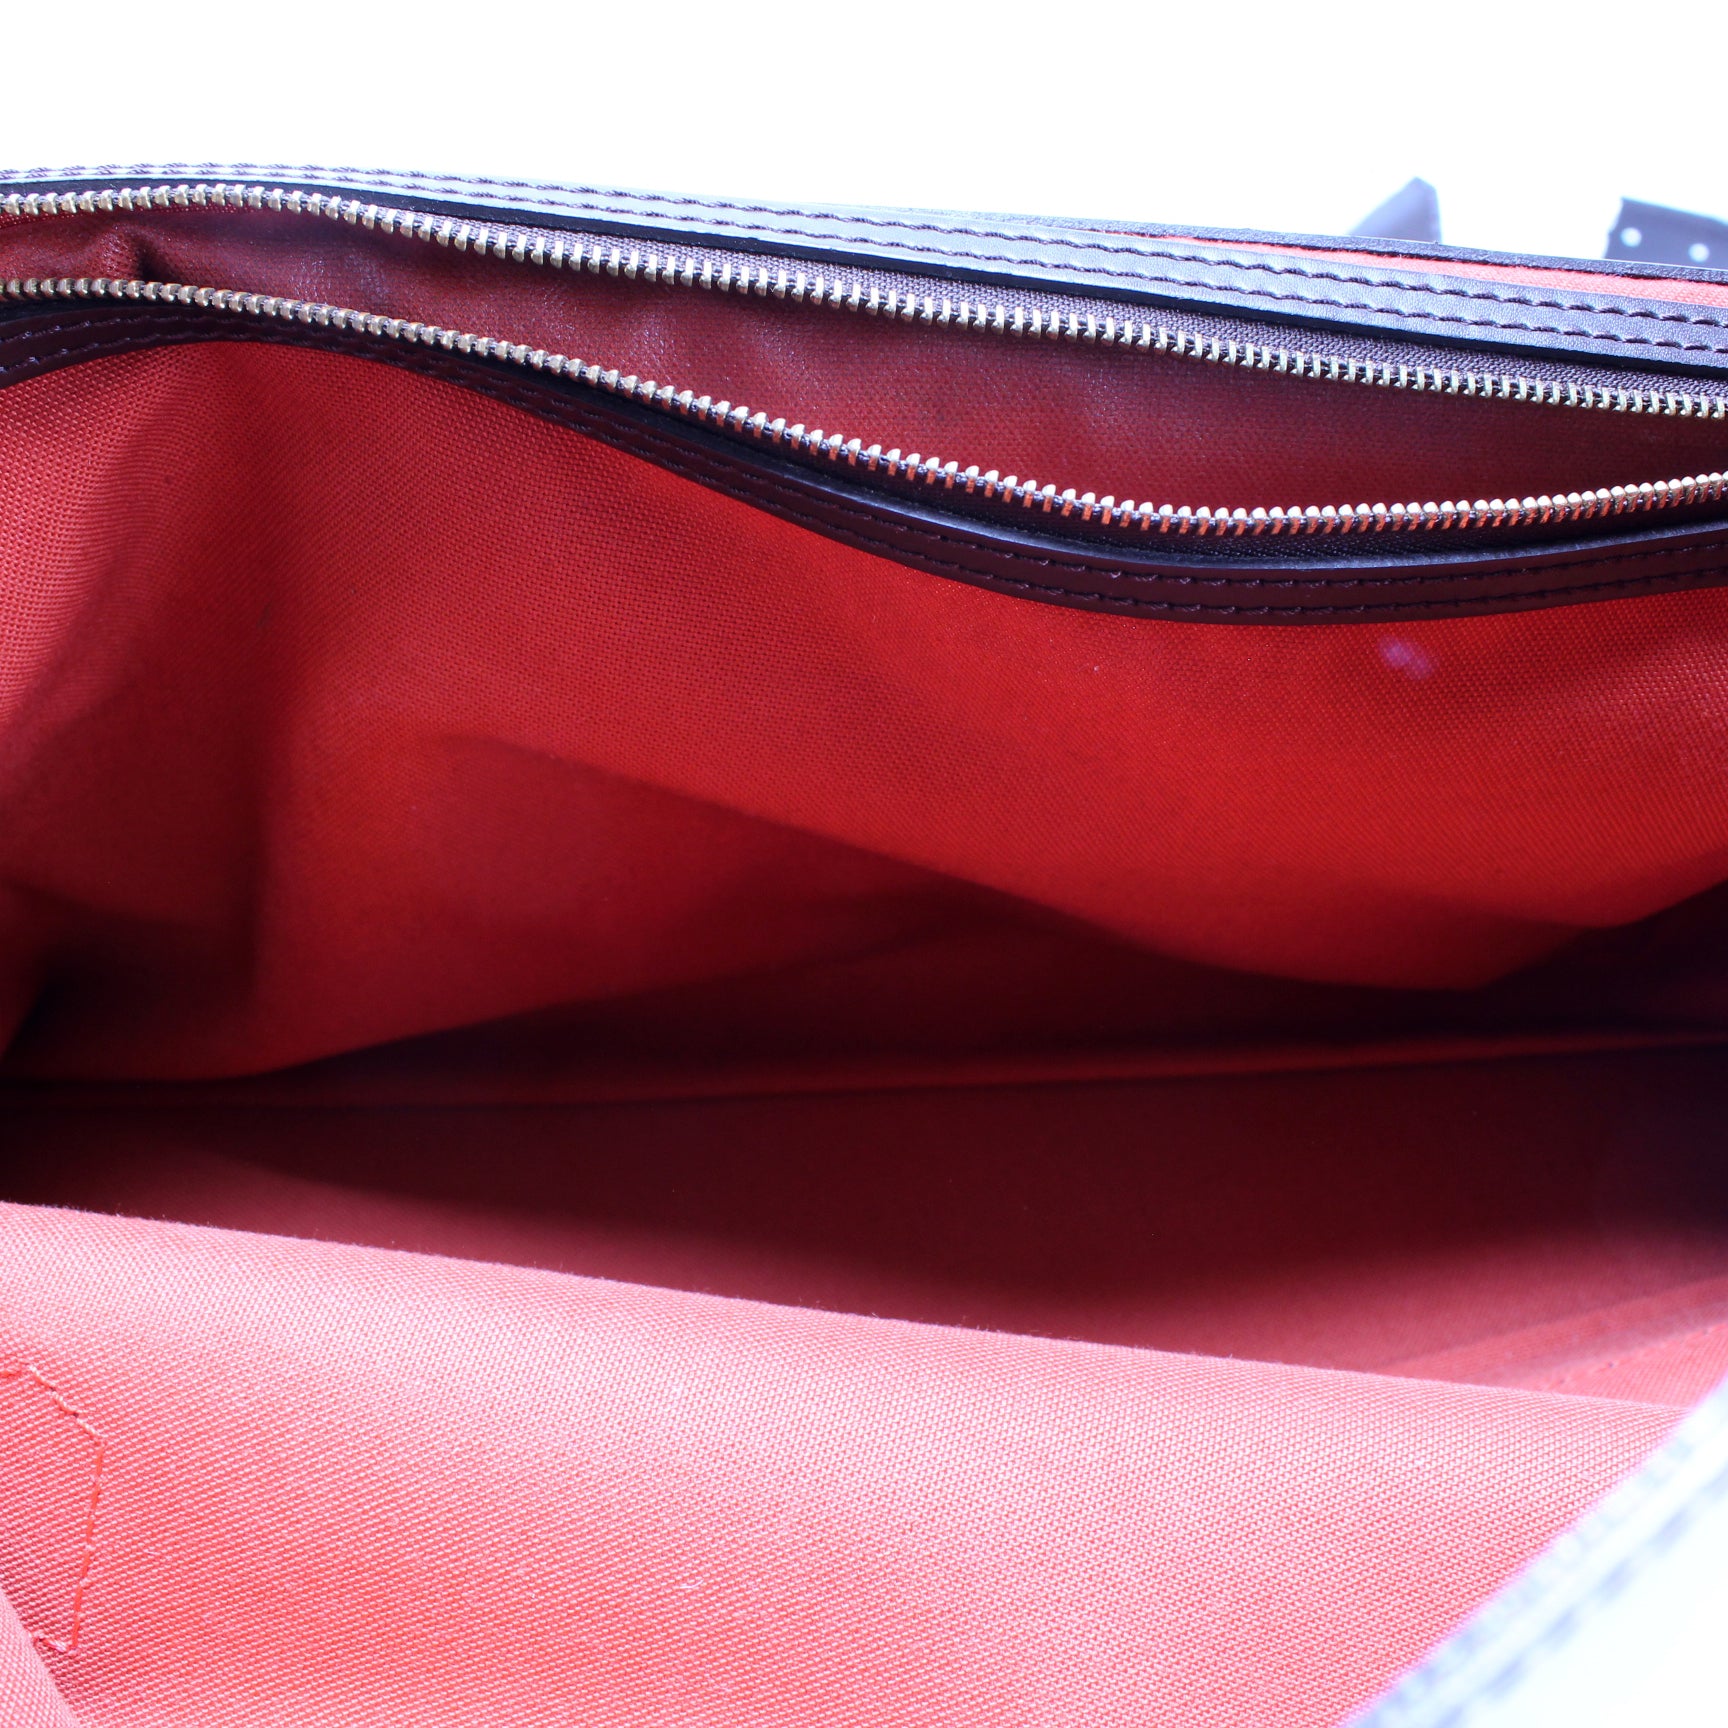 West End PM Damier Ebene – Keeks Designer Handbags